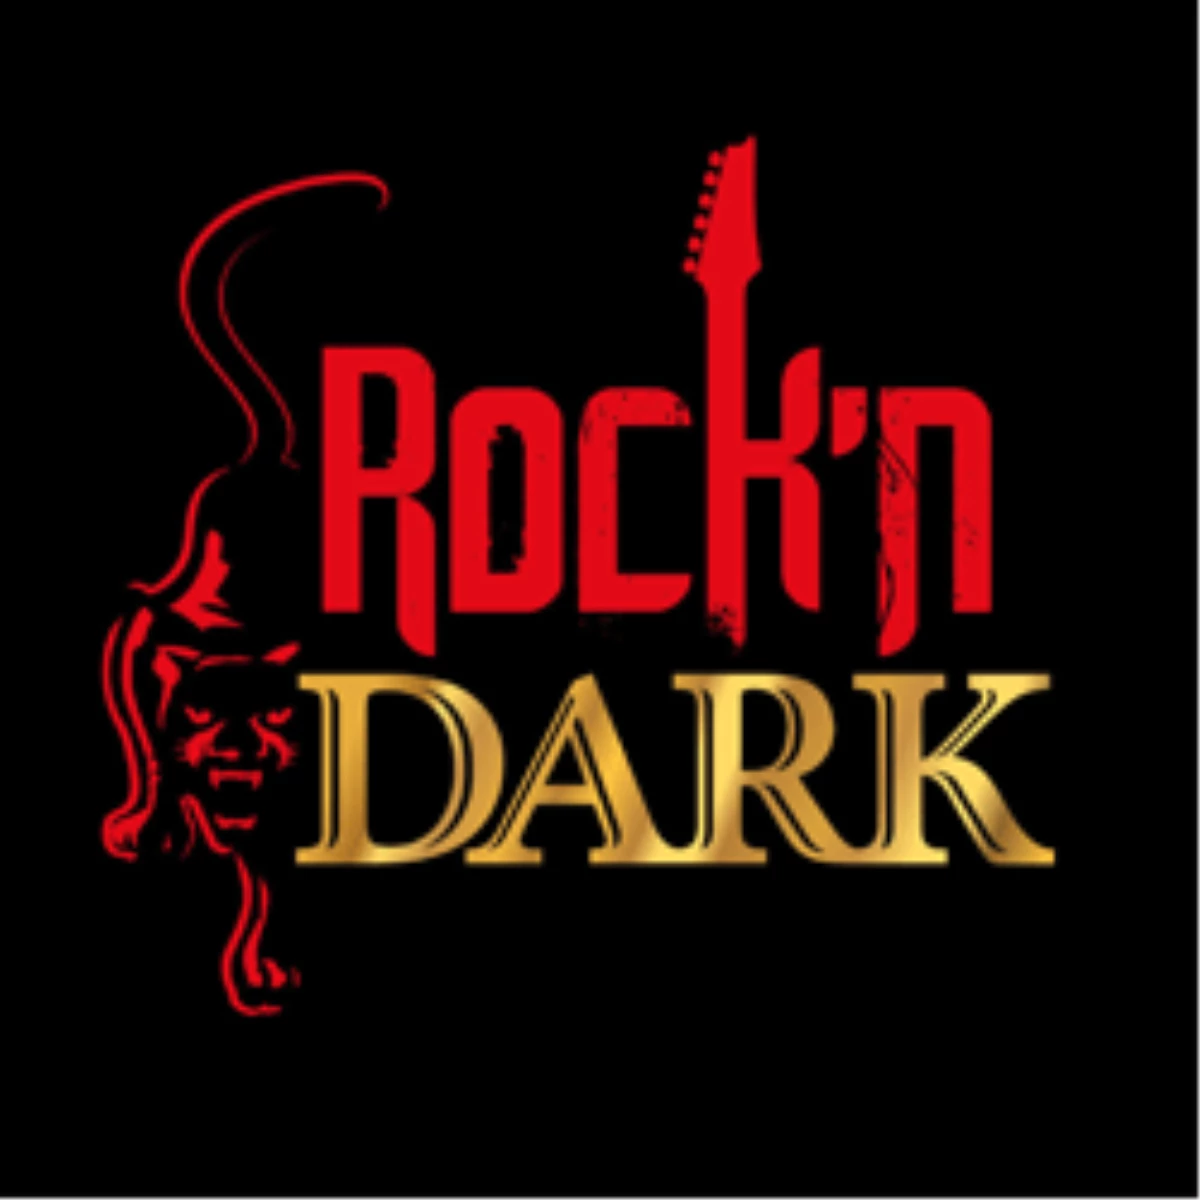 Rock’n Dark’tan Özel Queen Gecesi!